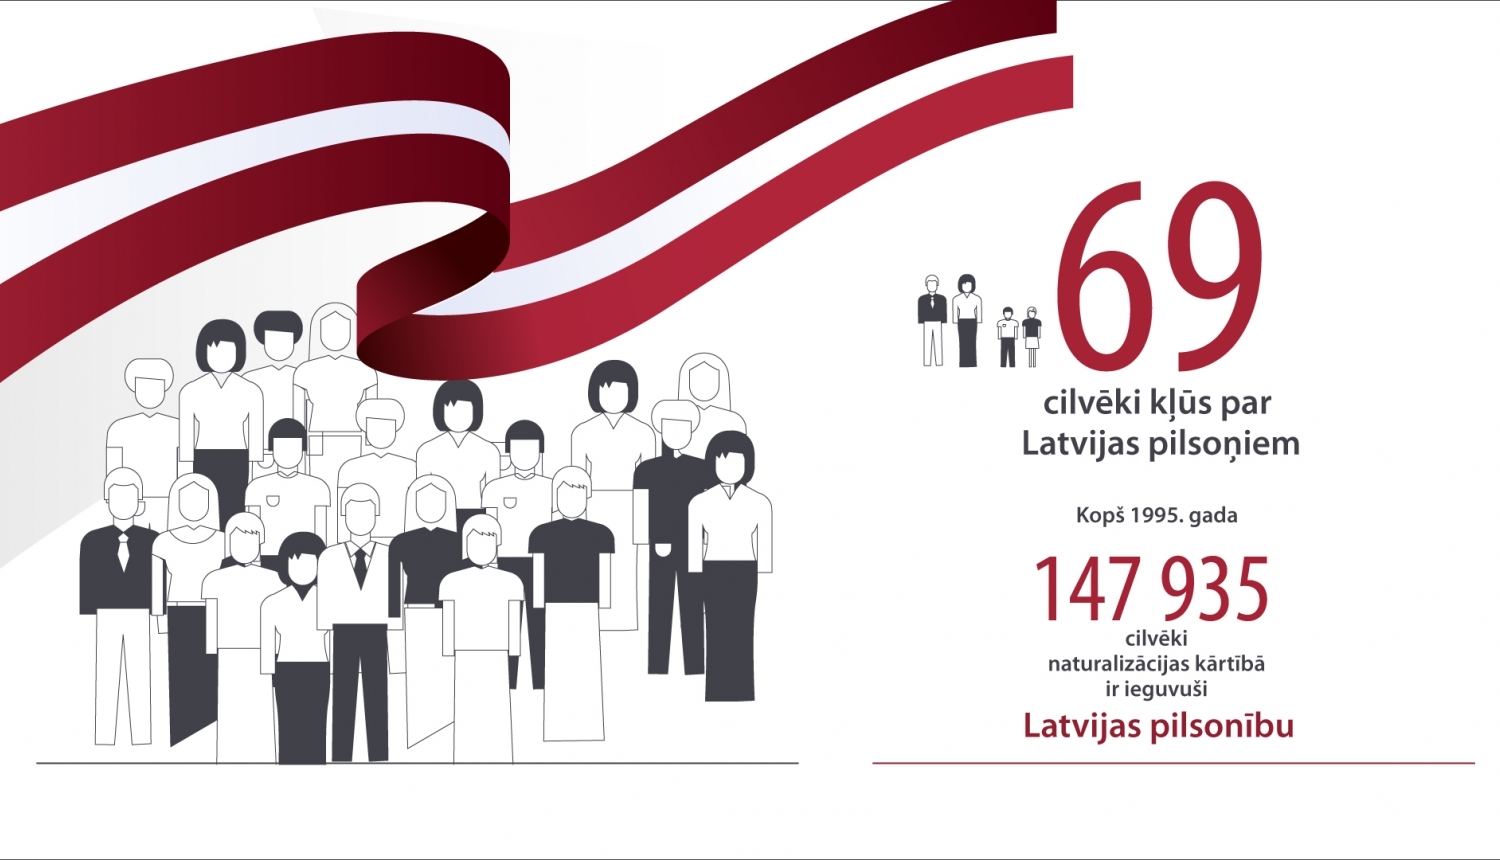 Grafiskais attēls par Naturalizācijas statistiku. Teksts: "69 cilvēki kļūs par Latvijas pilsoņiem. Kopš 1995. gada 147935 cilvēki naturalizācijas kārtībā ir ieguvuši Latvijas pilsonību."